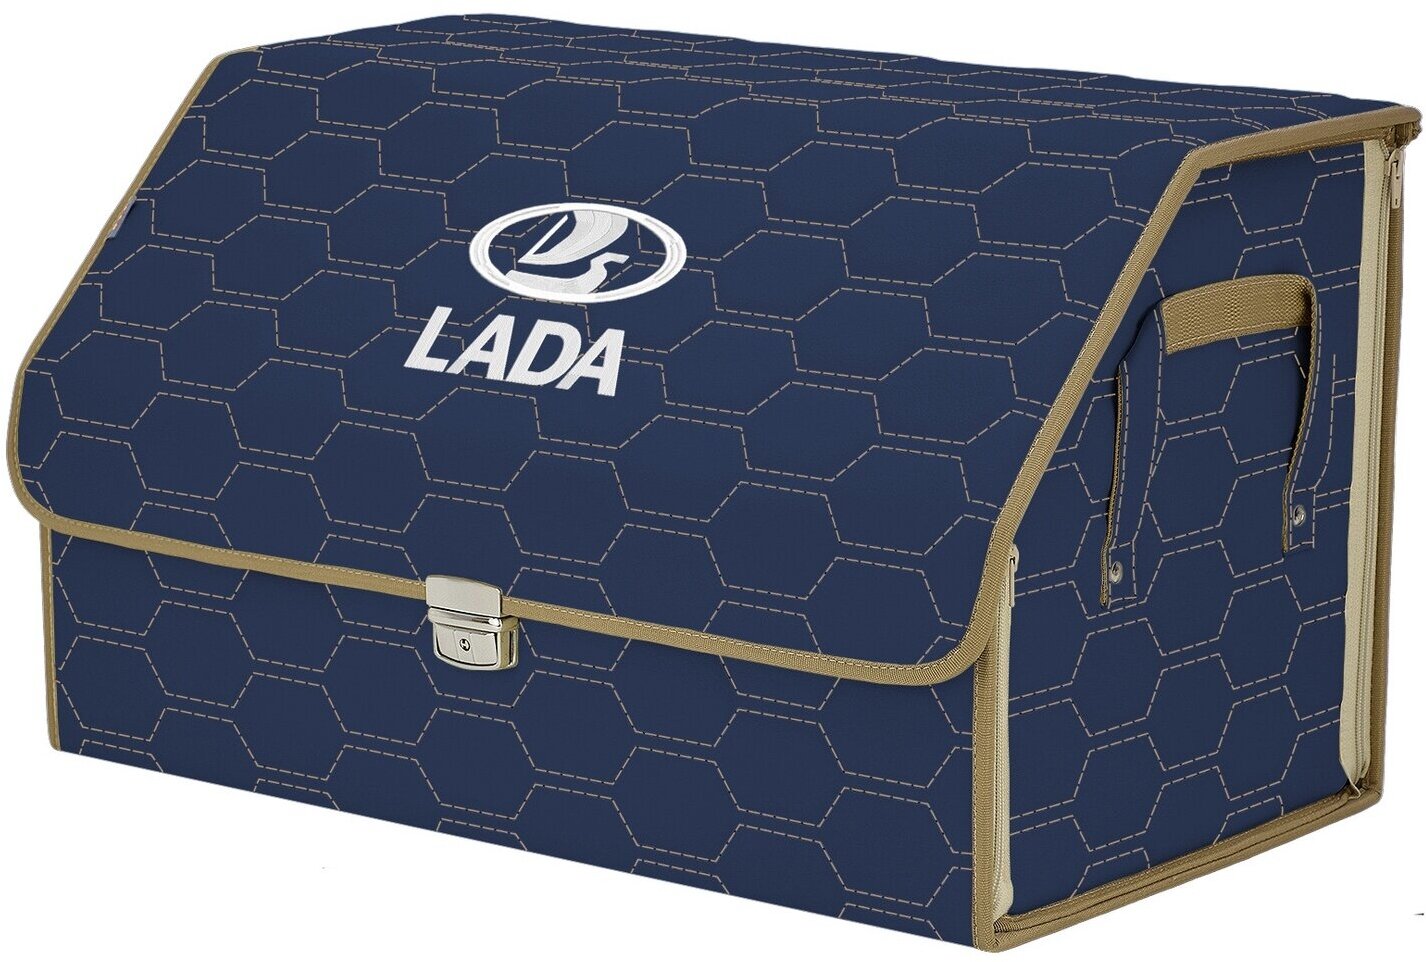 Органайзер-саквояж в багажник "Союз Премиум" (размер XL). Цвет: синий с бежевой прострочкой Соты и вышивкой LADA (лада).